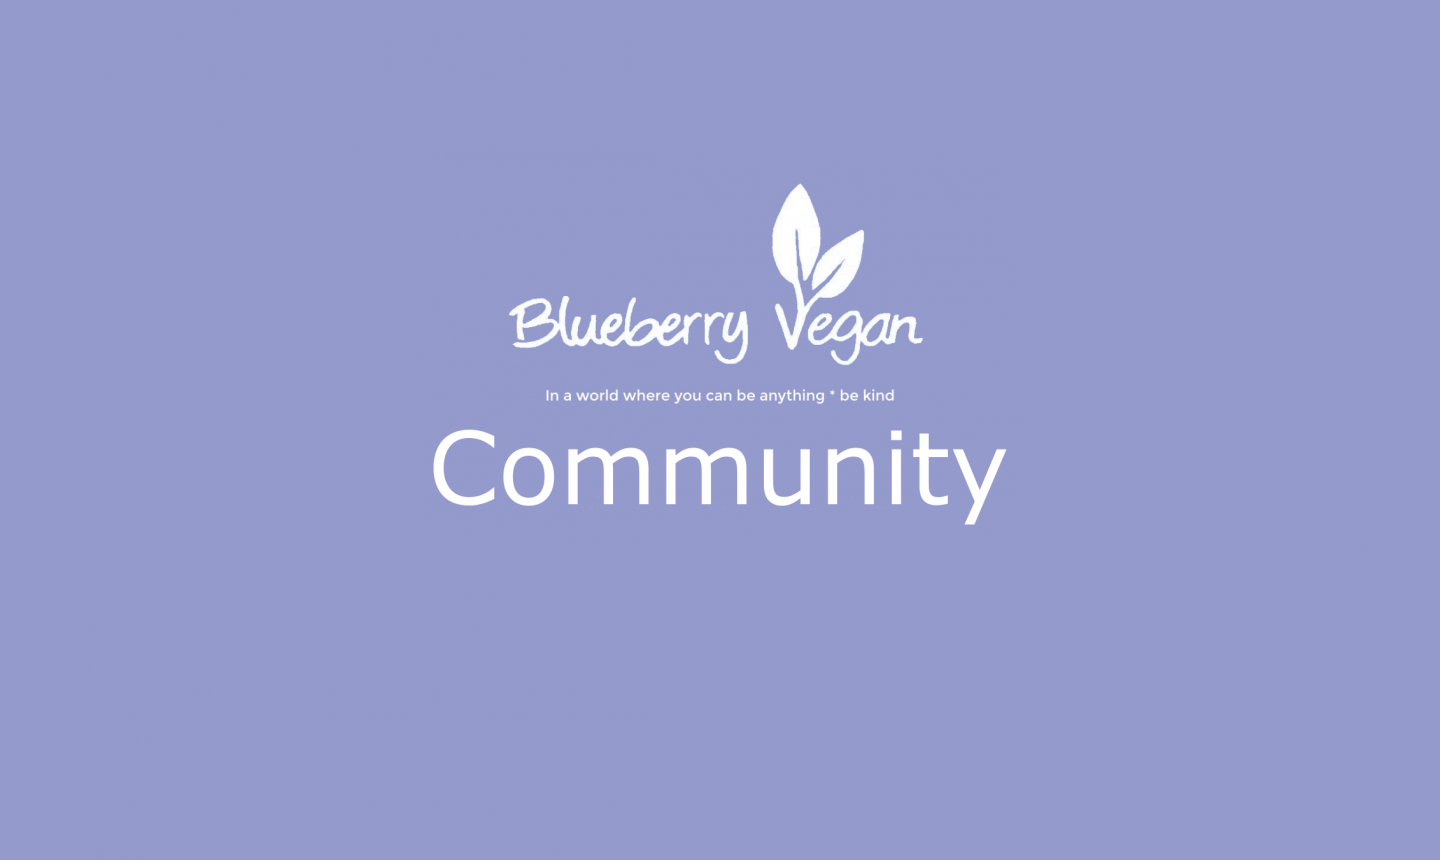 Herzlich willkommen in der Blueberry Vegan Community!